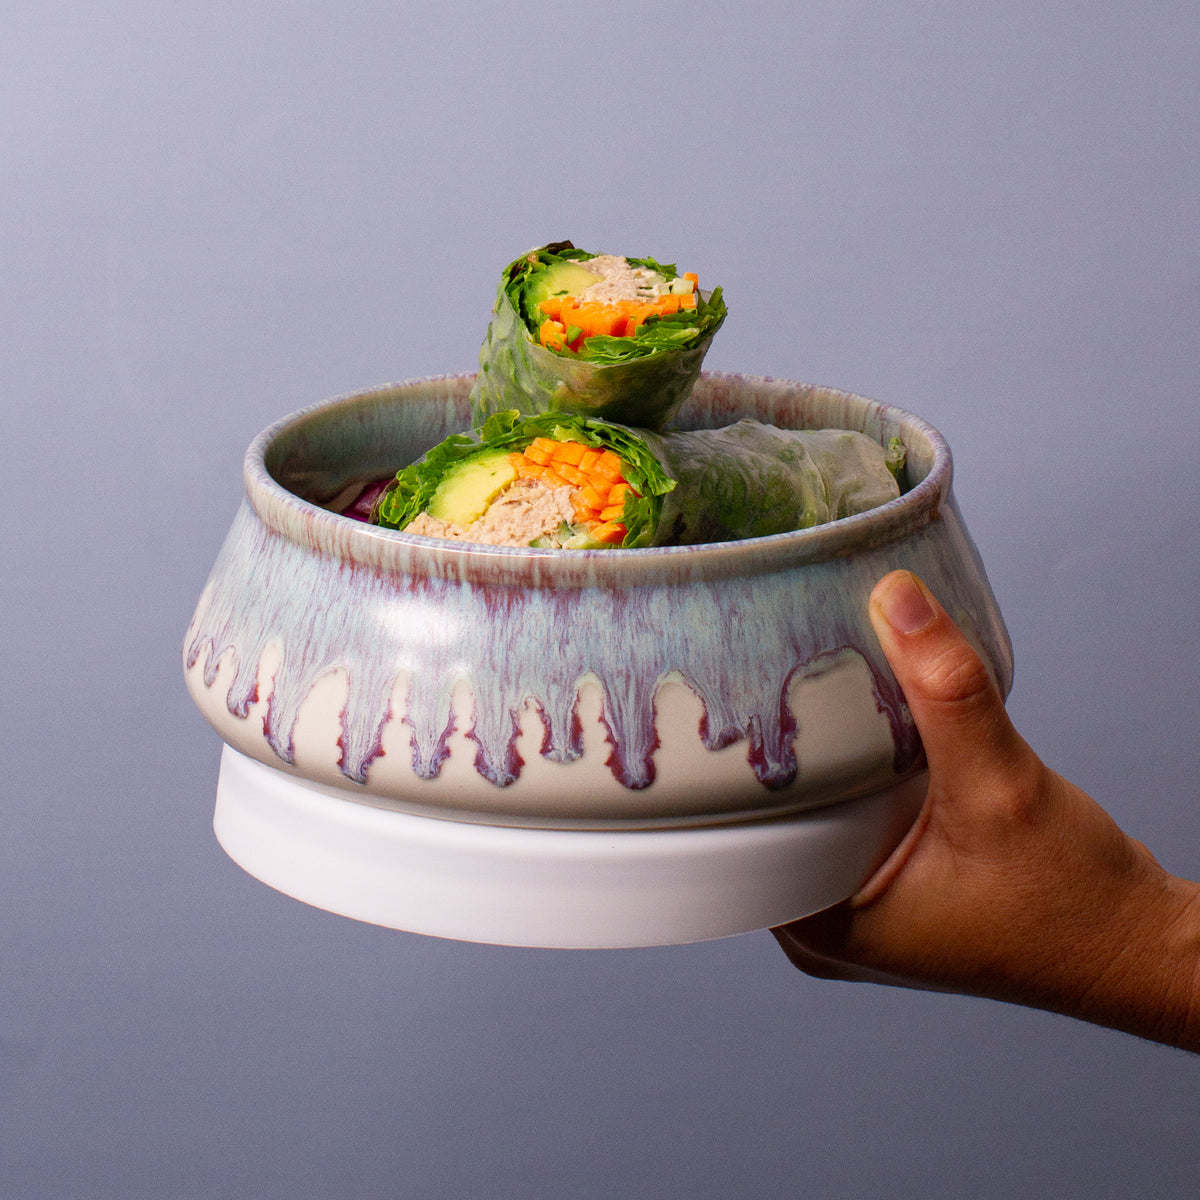 Make & Take Lunch Bowl - Ceramic